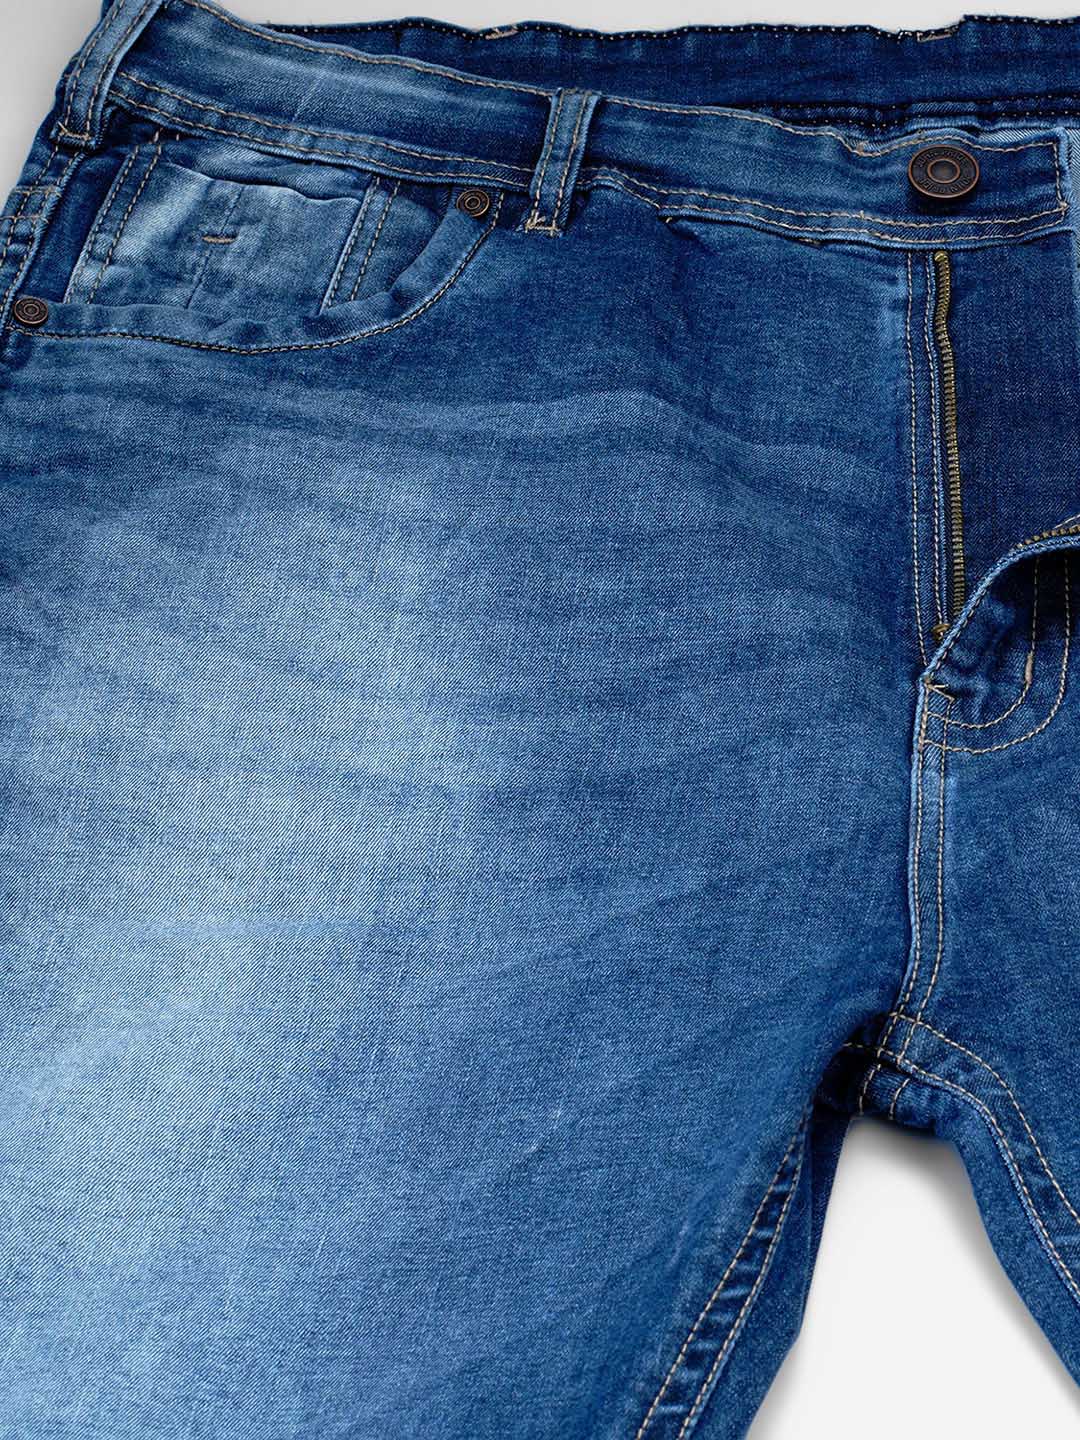 bottomwear/jeans/JPJ12122/jpj12122-2.jpg